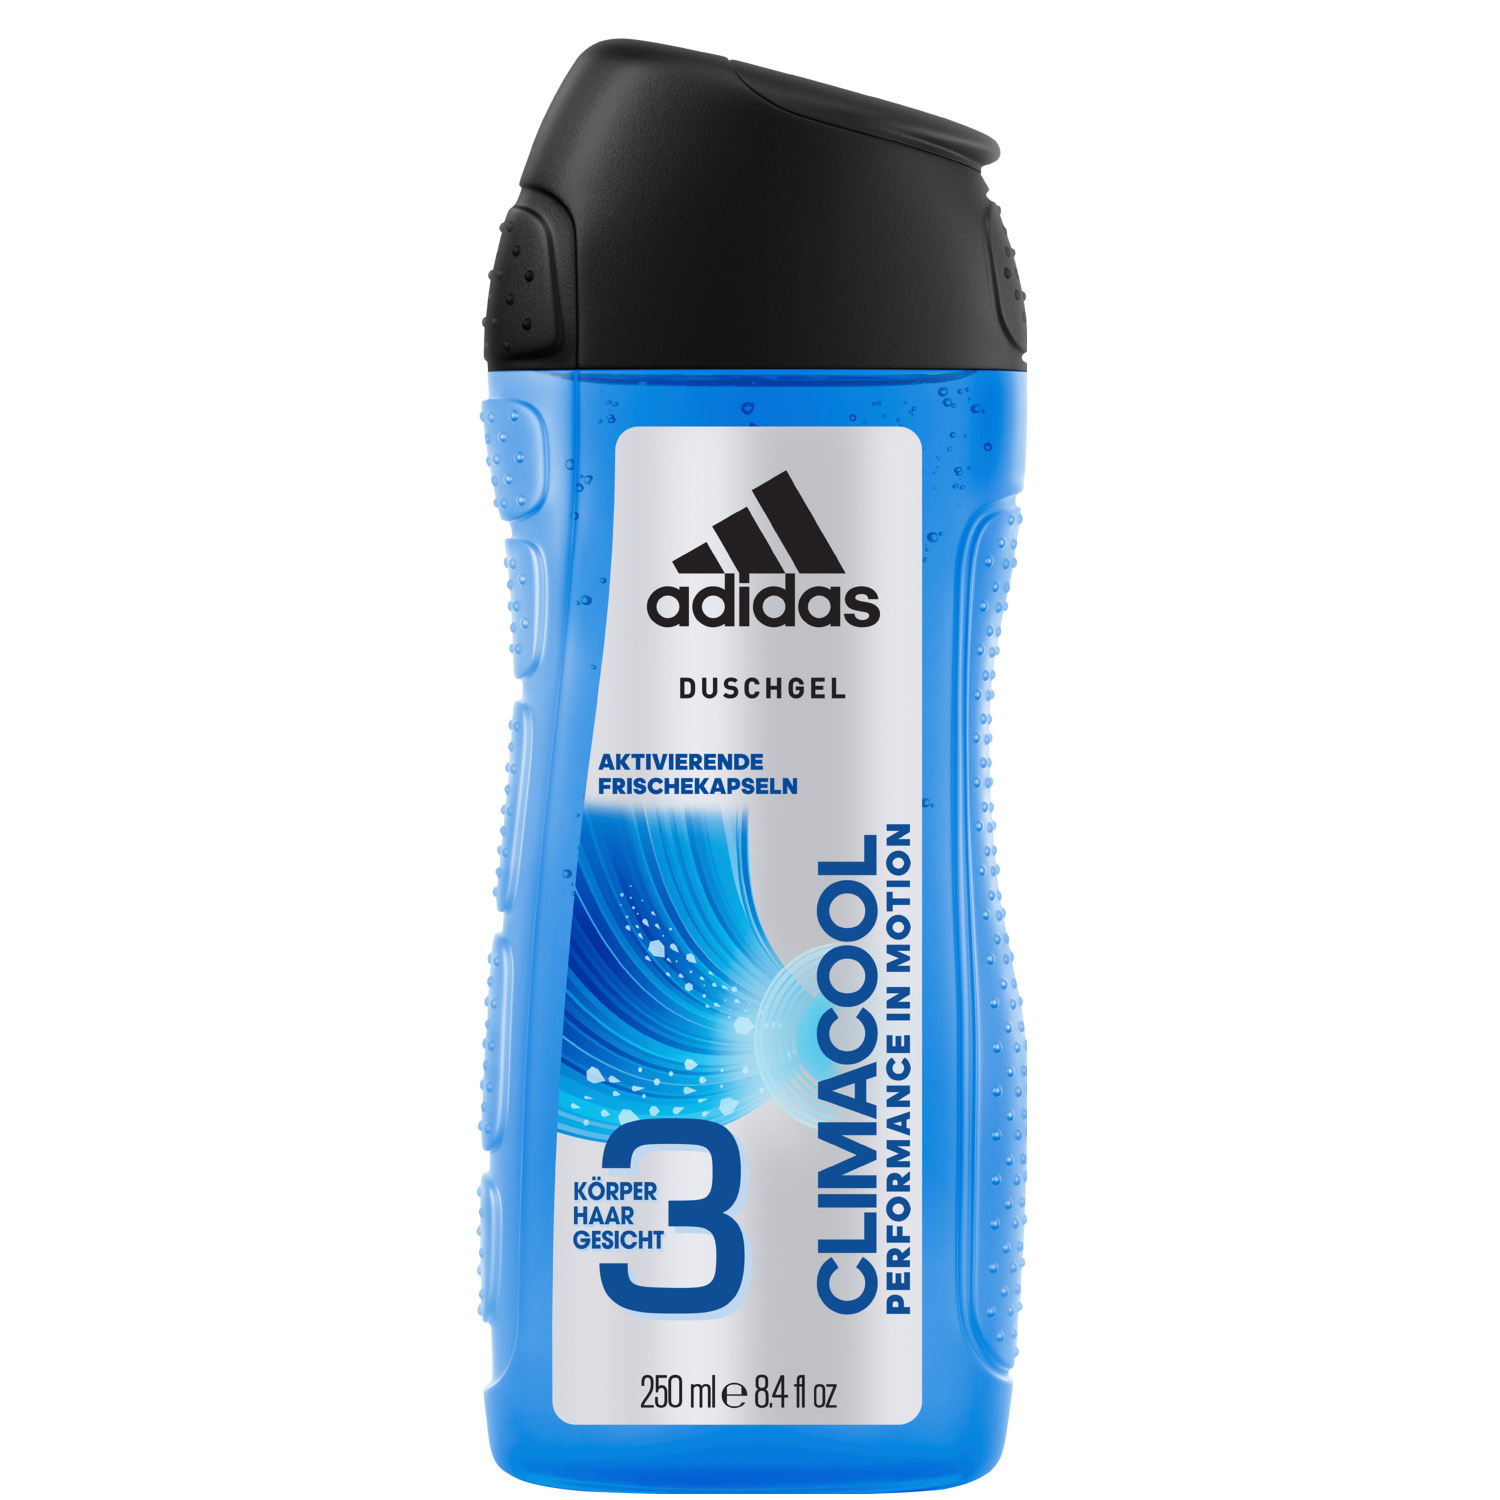 Adidas Climacool 3in1 Shower Gel 250ml